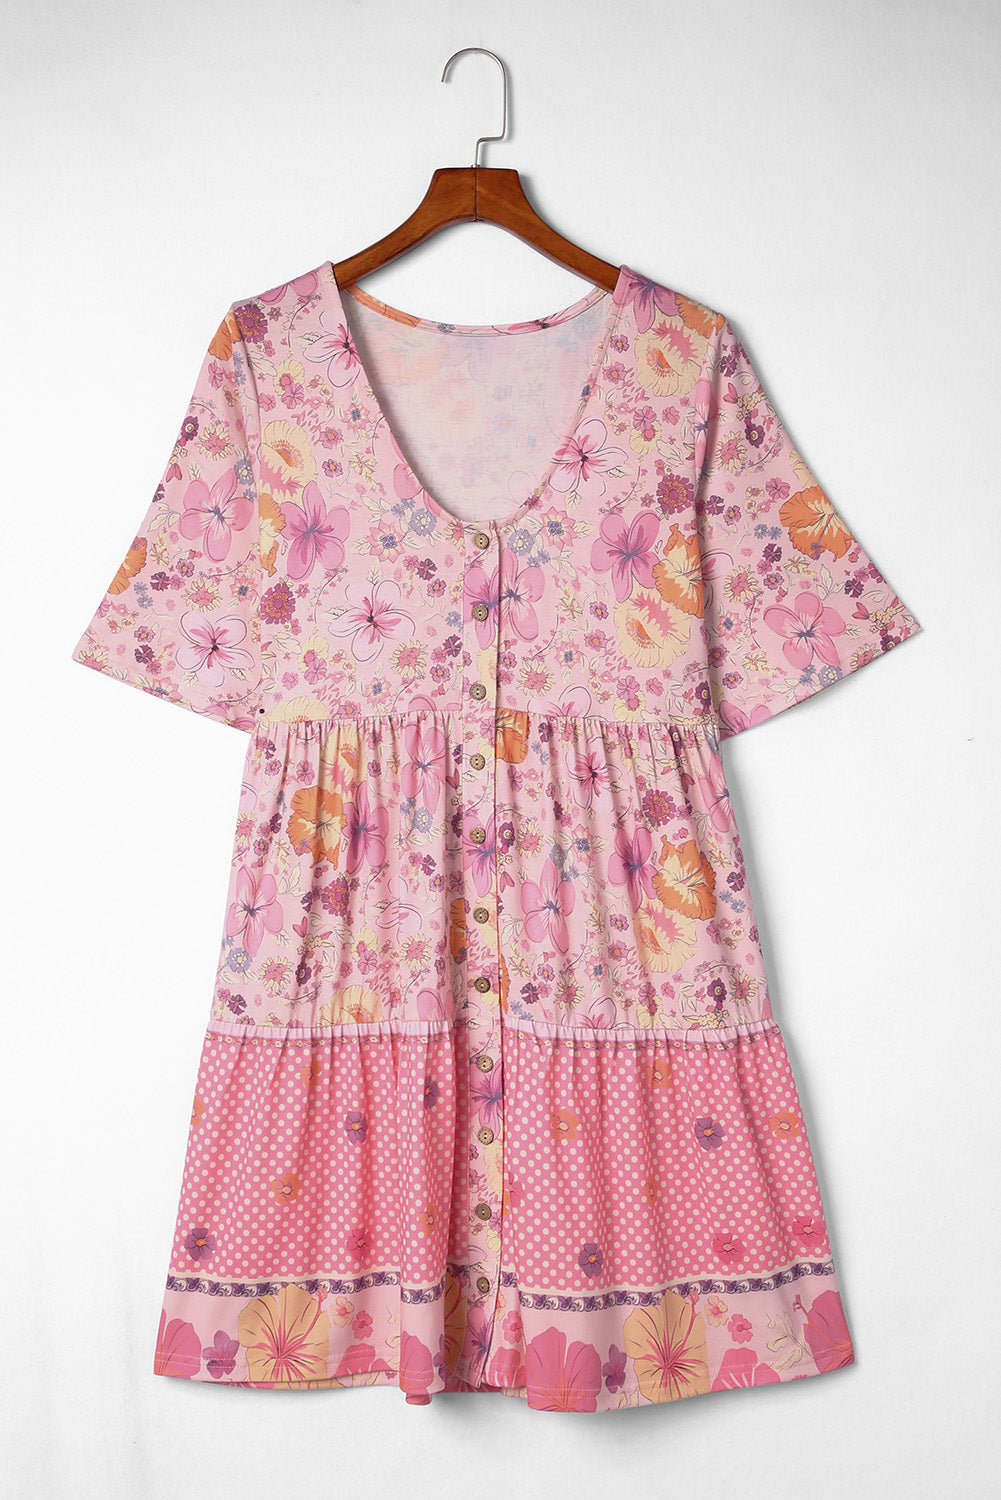 Večbarvna mini obleka s cvetličnim vzorcem hibiskusa in naborki